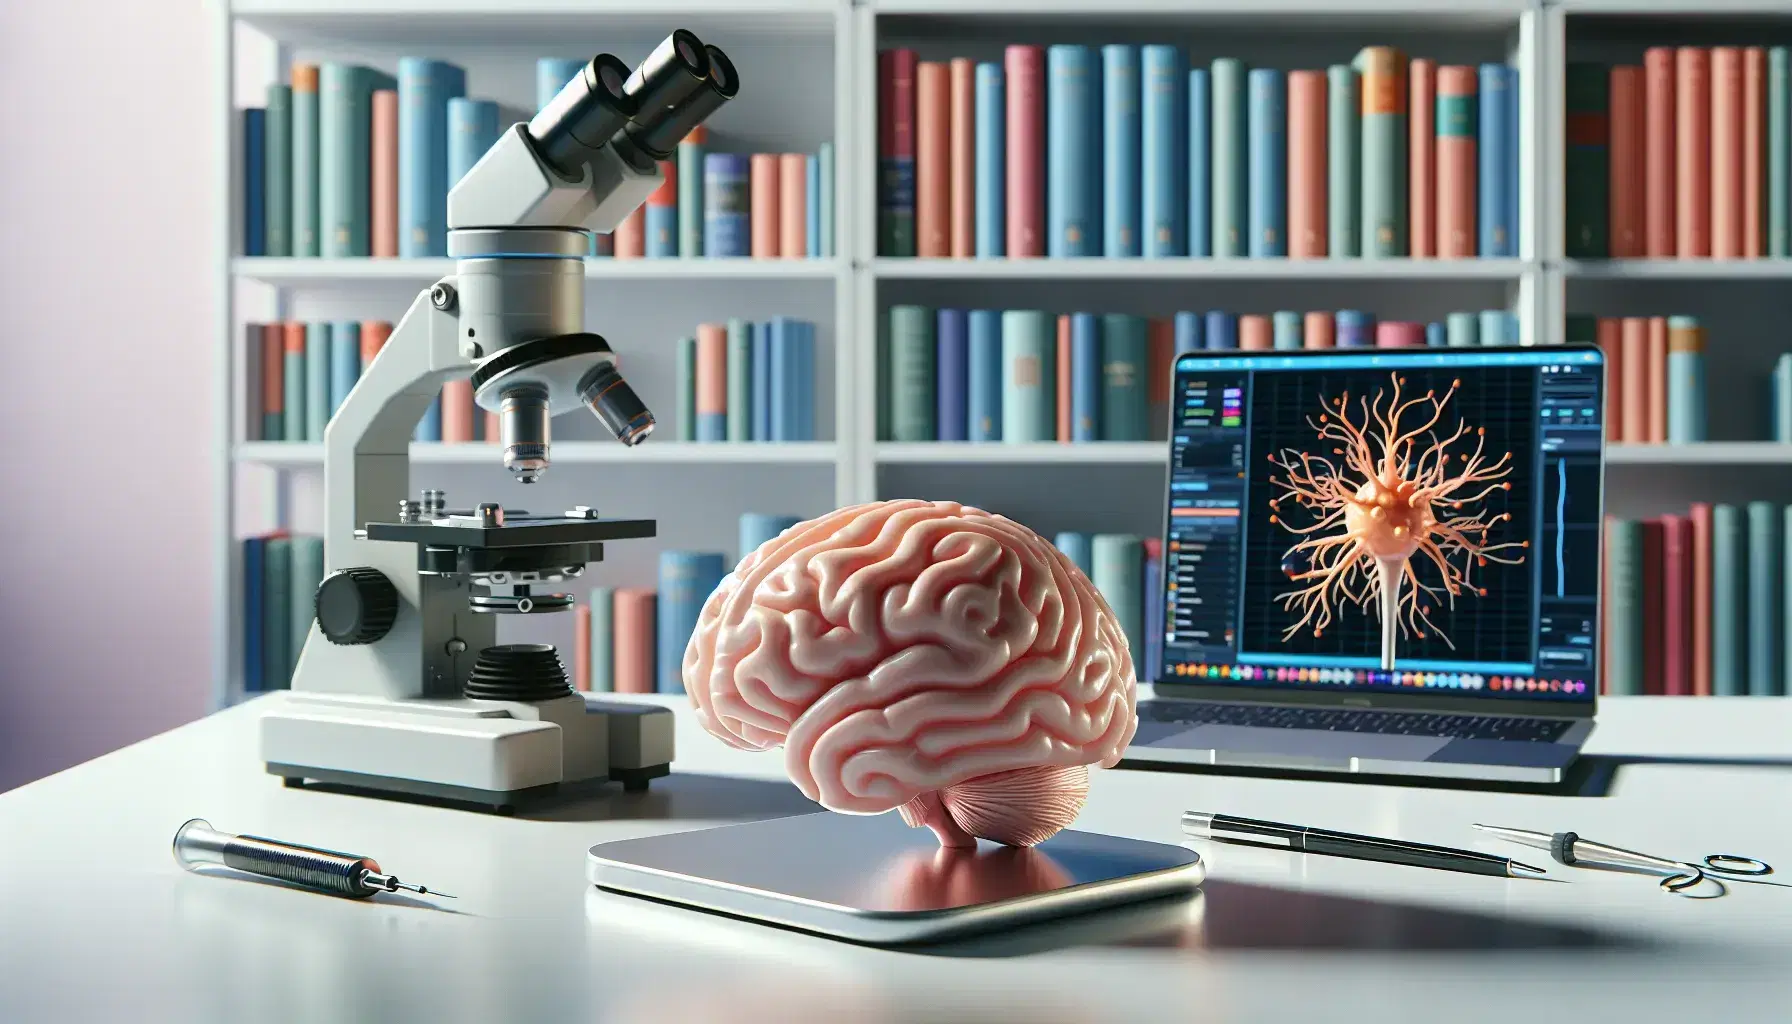 Laboratorio moderno con cerebro humano plástico en mesa, microscopio electrónico al lado y portátil con gráficos, mano con guantes sosteniendo modelo de neurona.